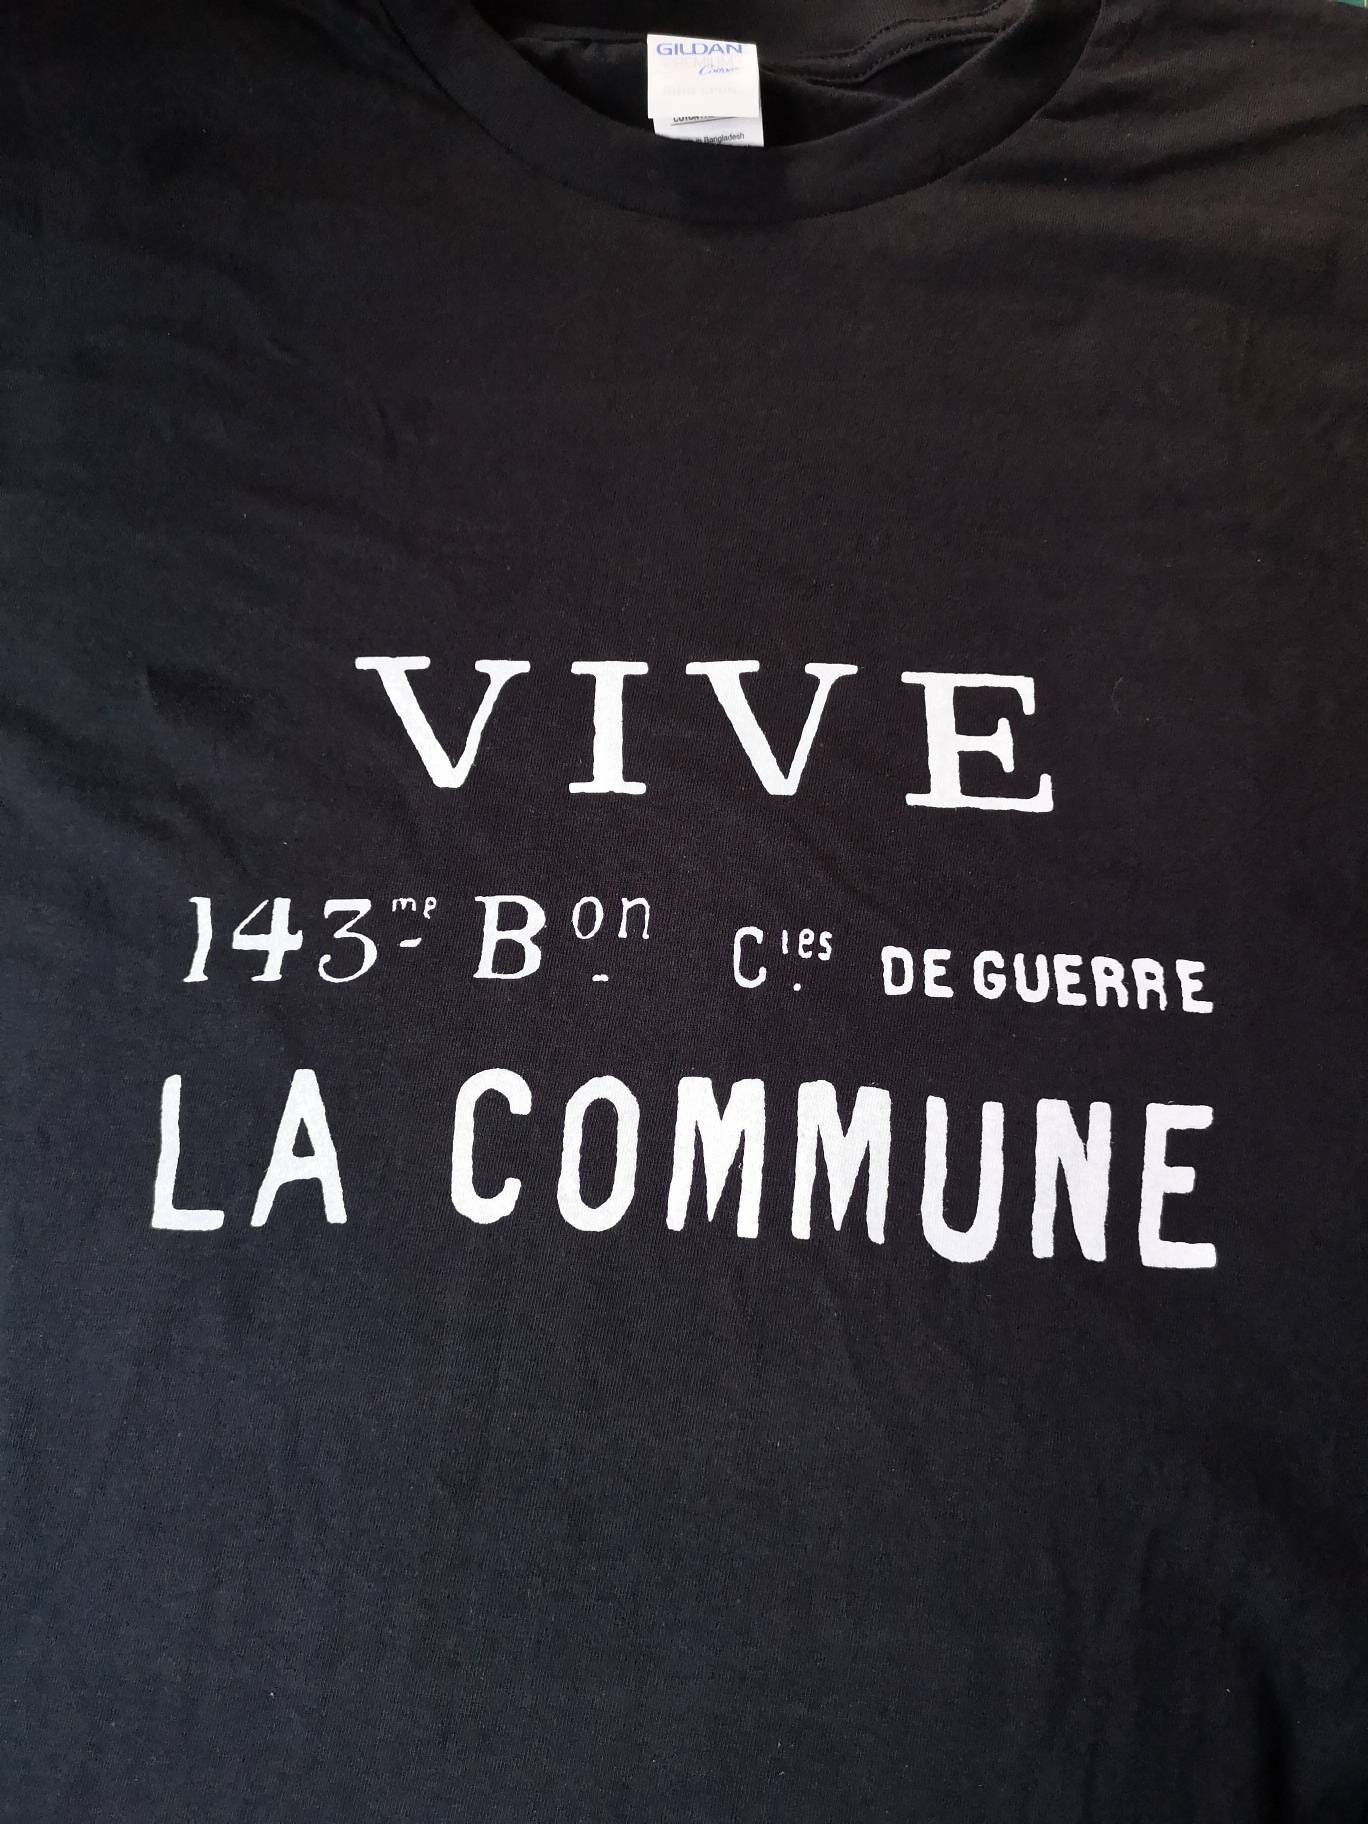 VIVE LA COMMUNE flag t-shirt Paris Commune - Etsy 日本